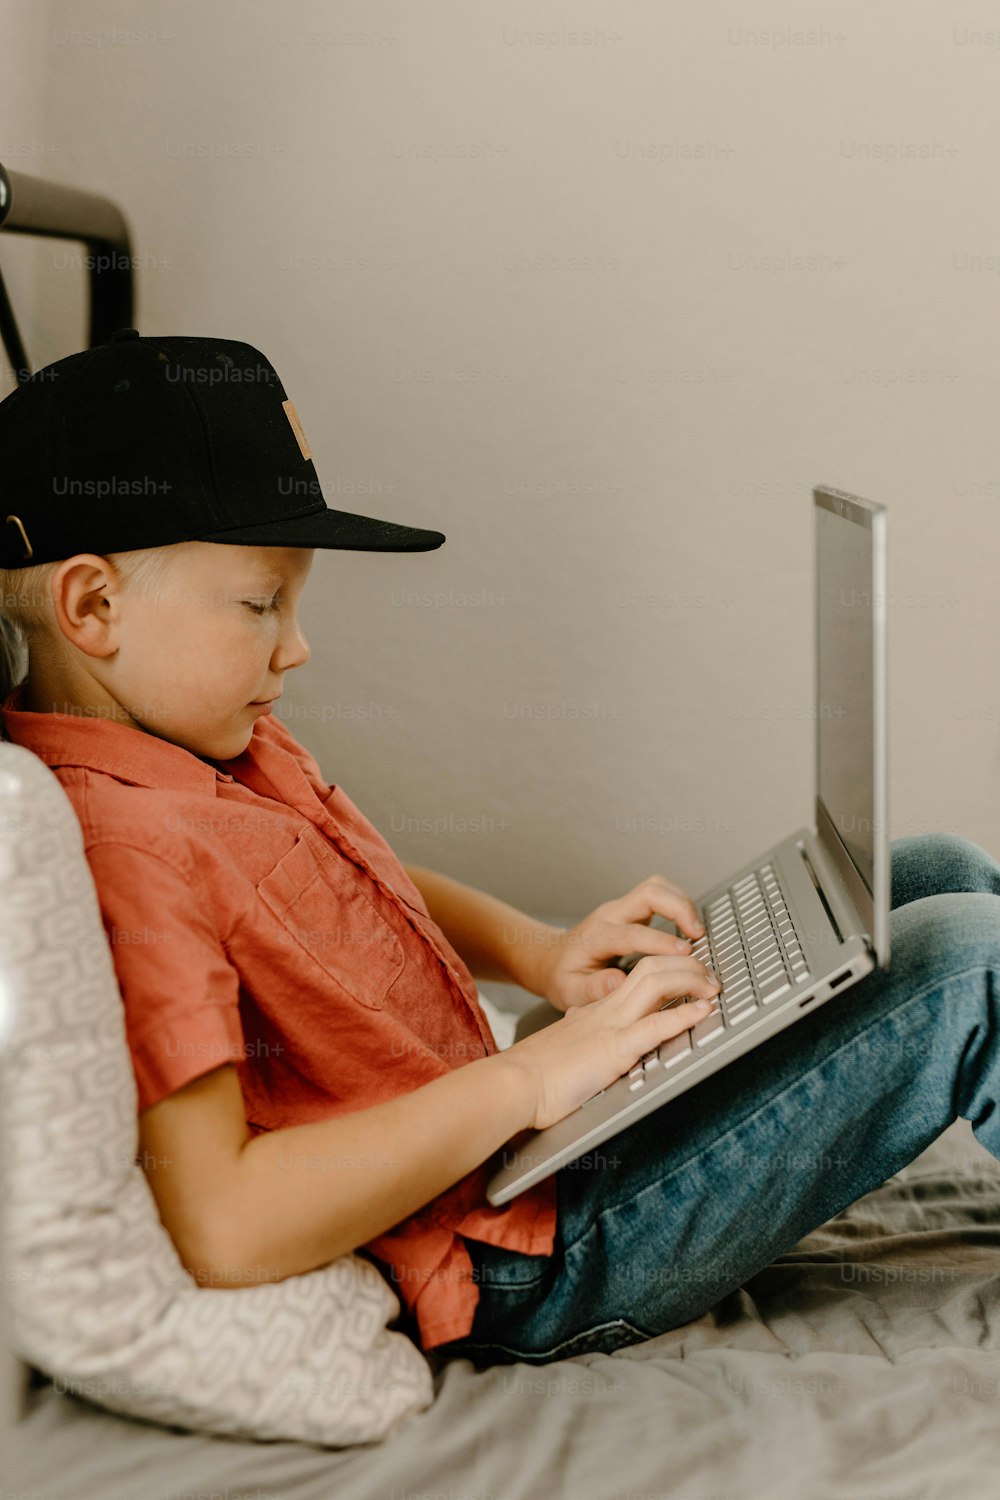 Un giovane ragazzo seduto su un letto usando un computer portatile